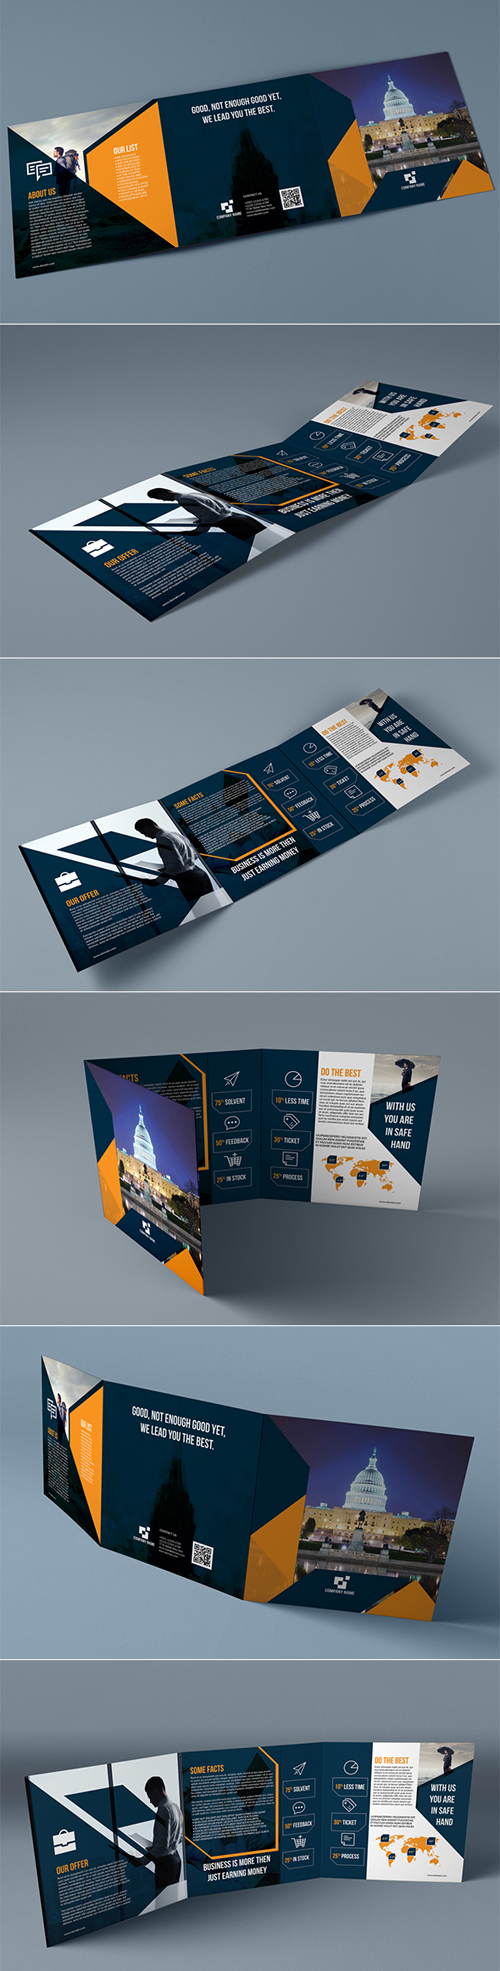 Ultimate Square Trifold Brochure Design